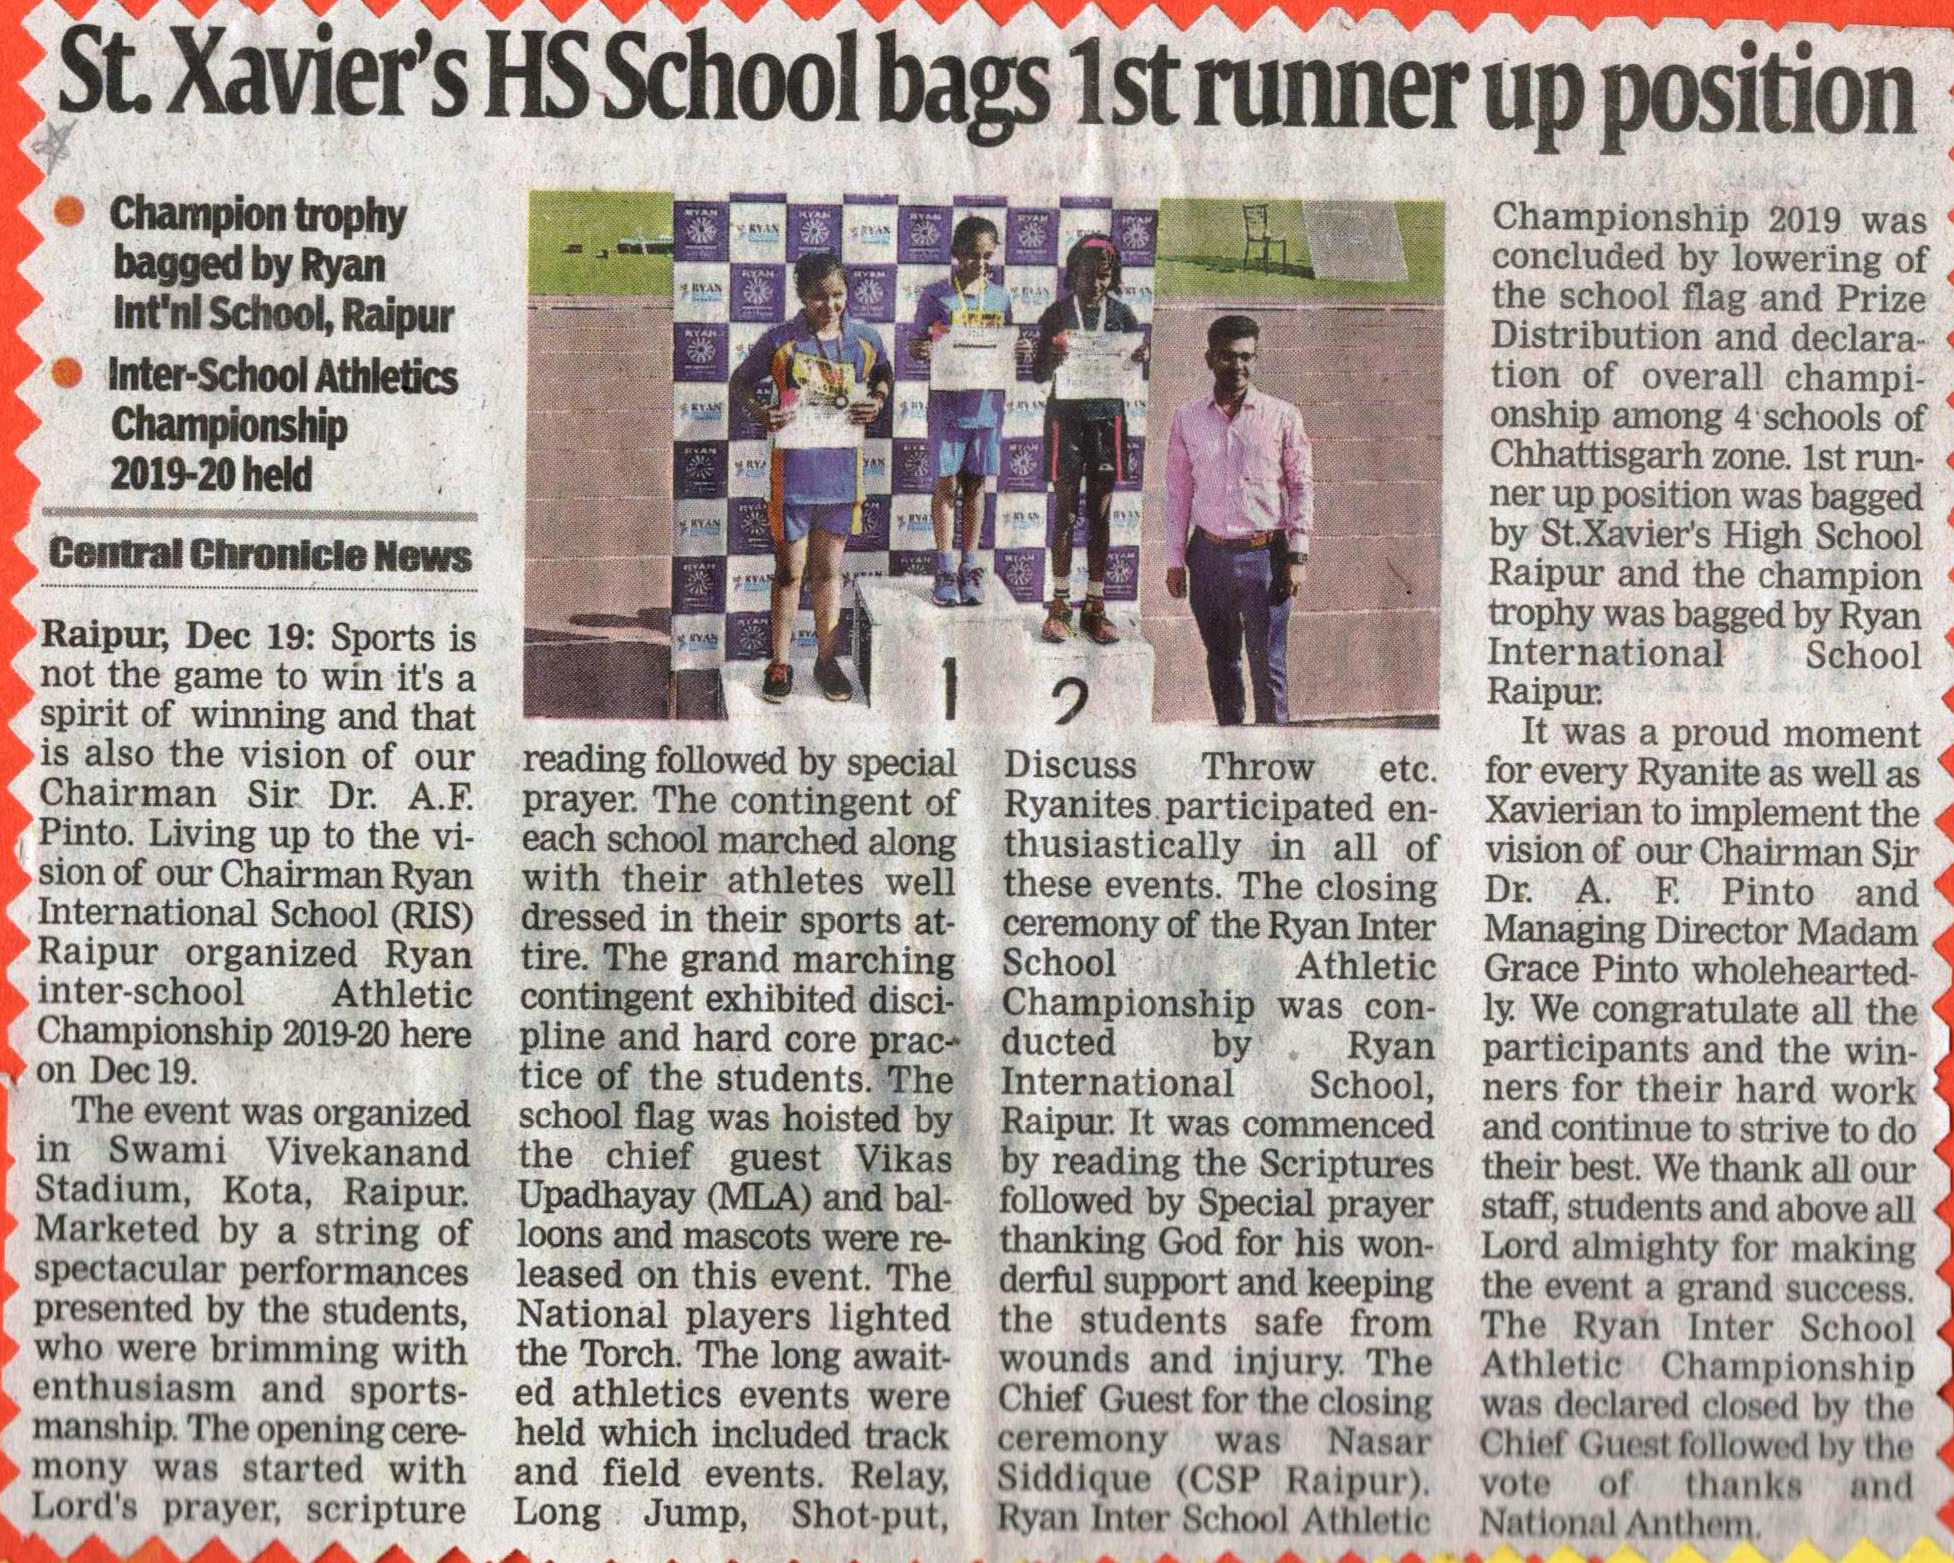 St. Xavier's High School bags 1st runner up position